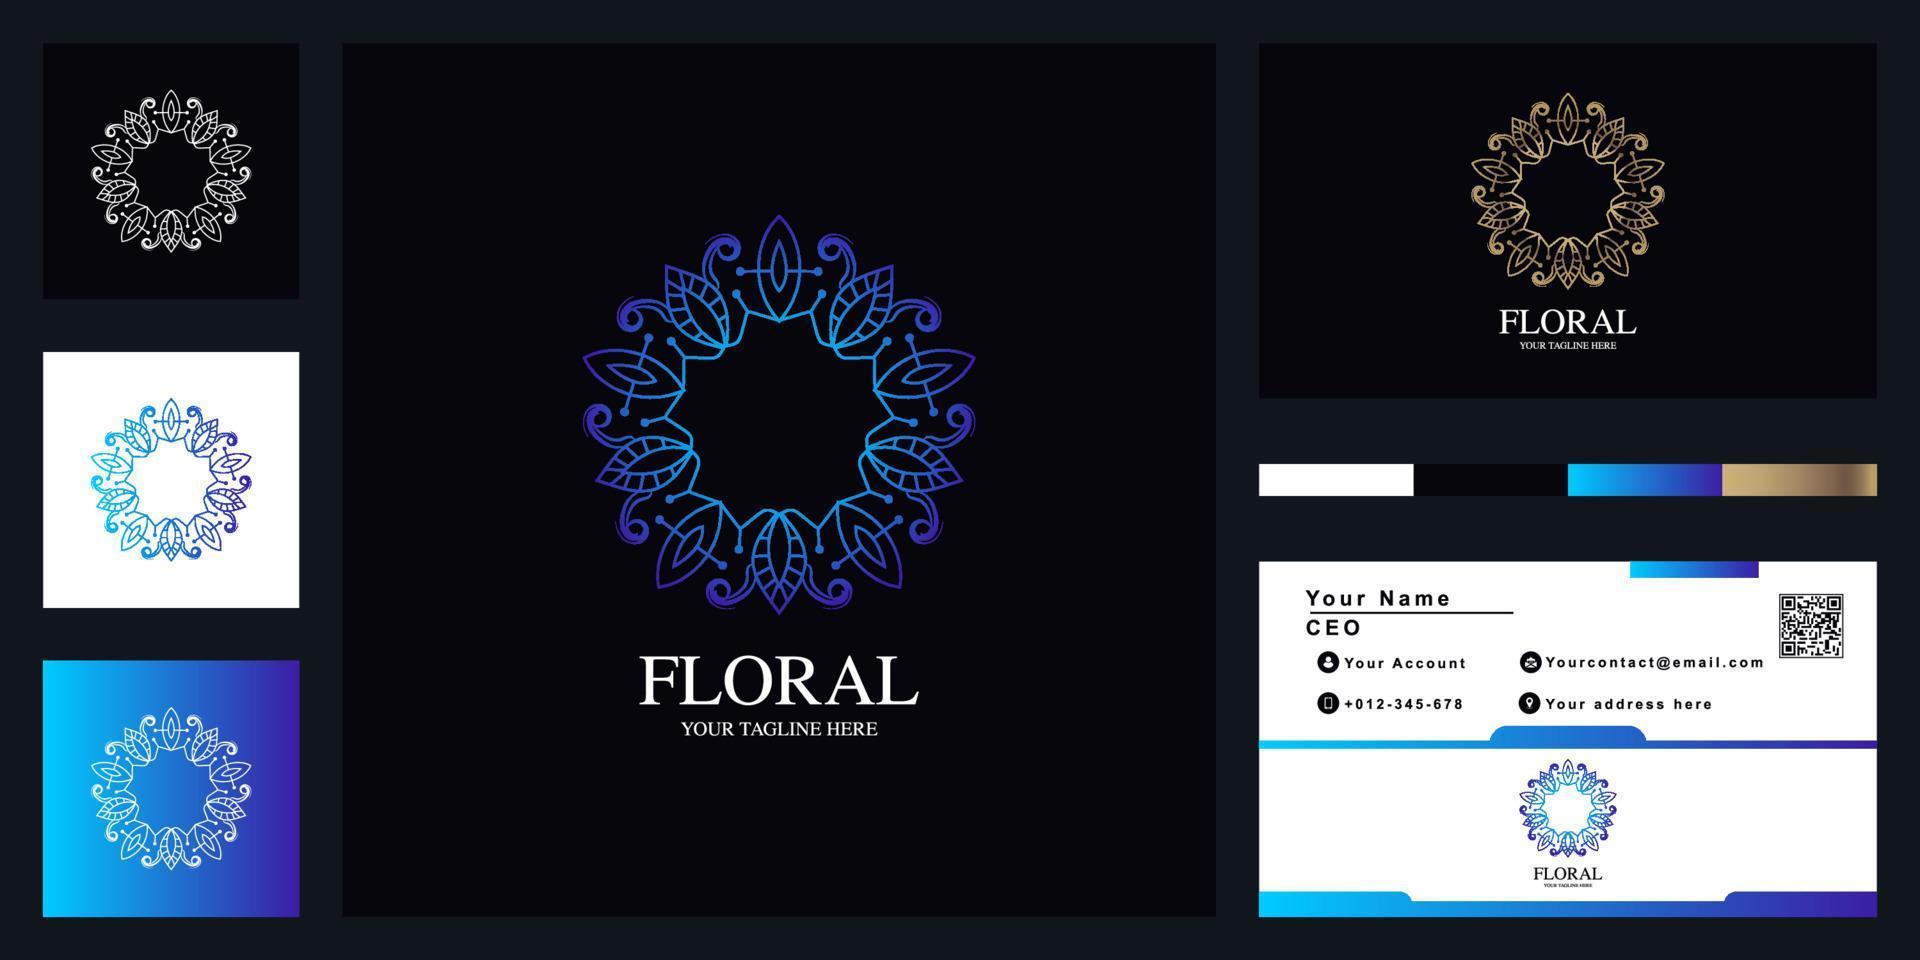 blomma eller prydnad lyx logotyp malldesign med visitkort. vektor